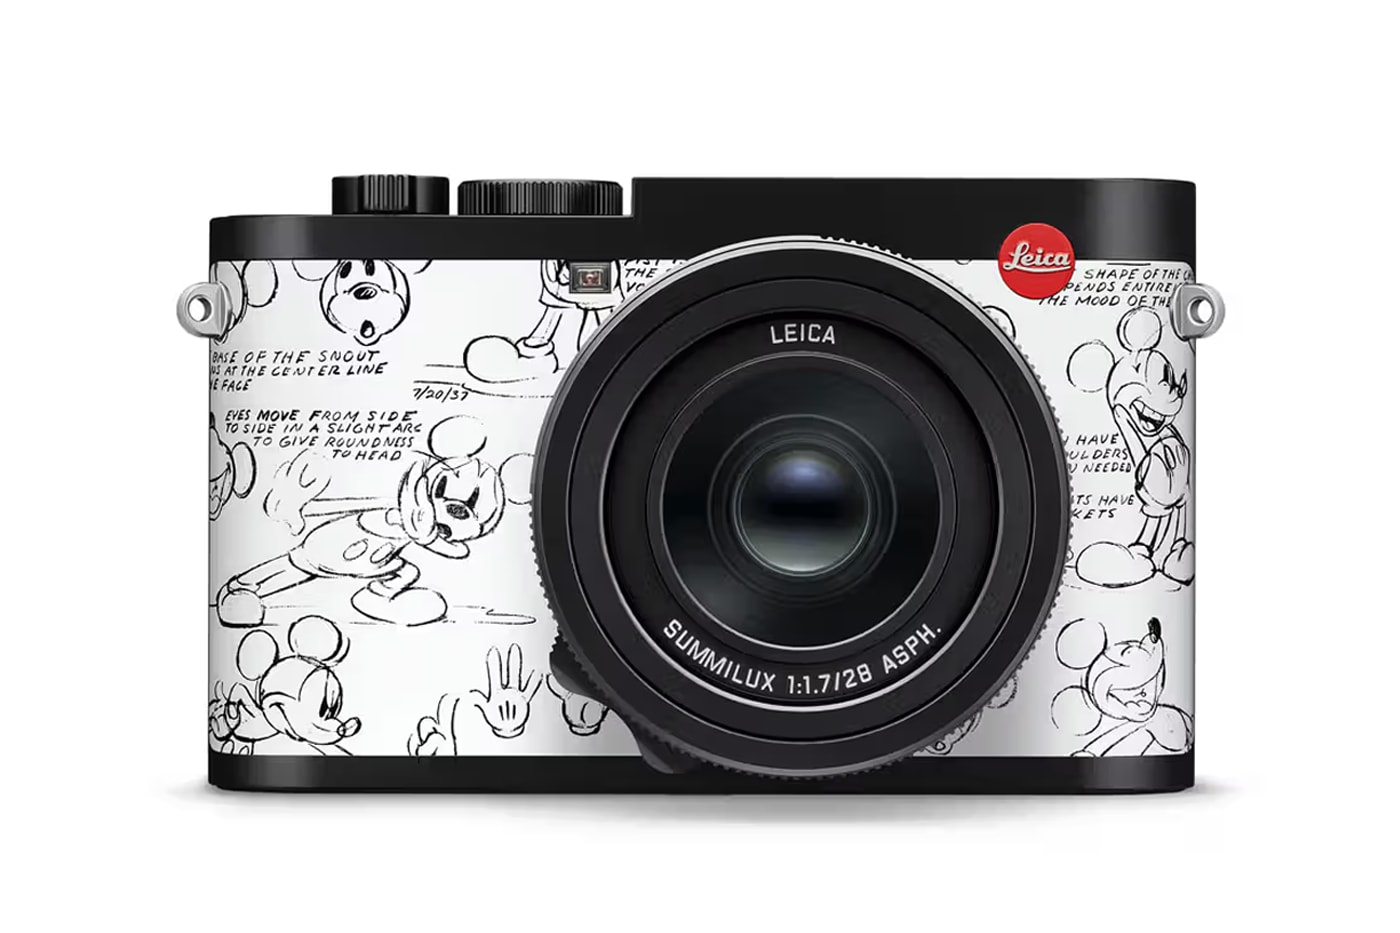 ライカから ディズニー 100周年を記念した特別限定モデルが発売 Leica Celebrates Disney's 100th Anniversary With a Limited-Edition Camera Collaboration